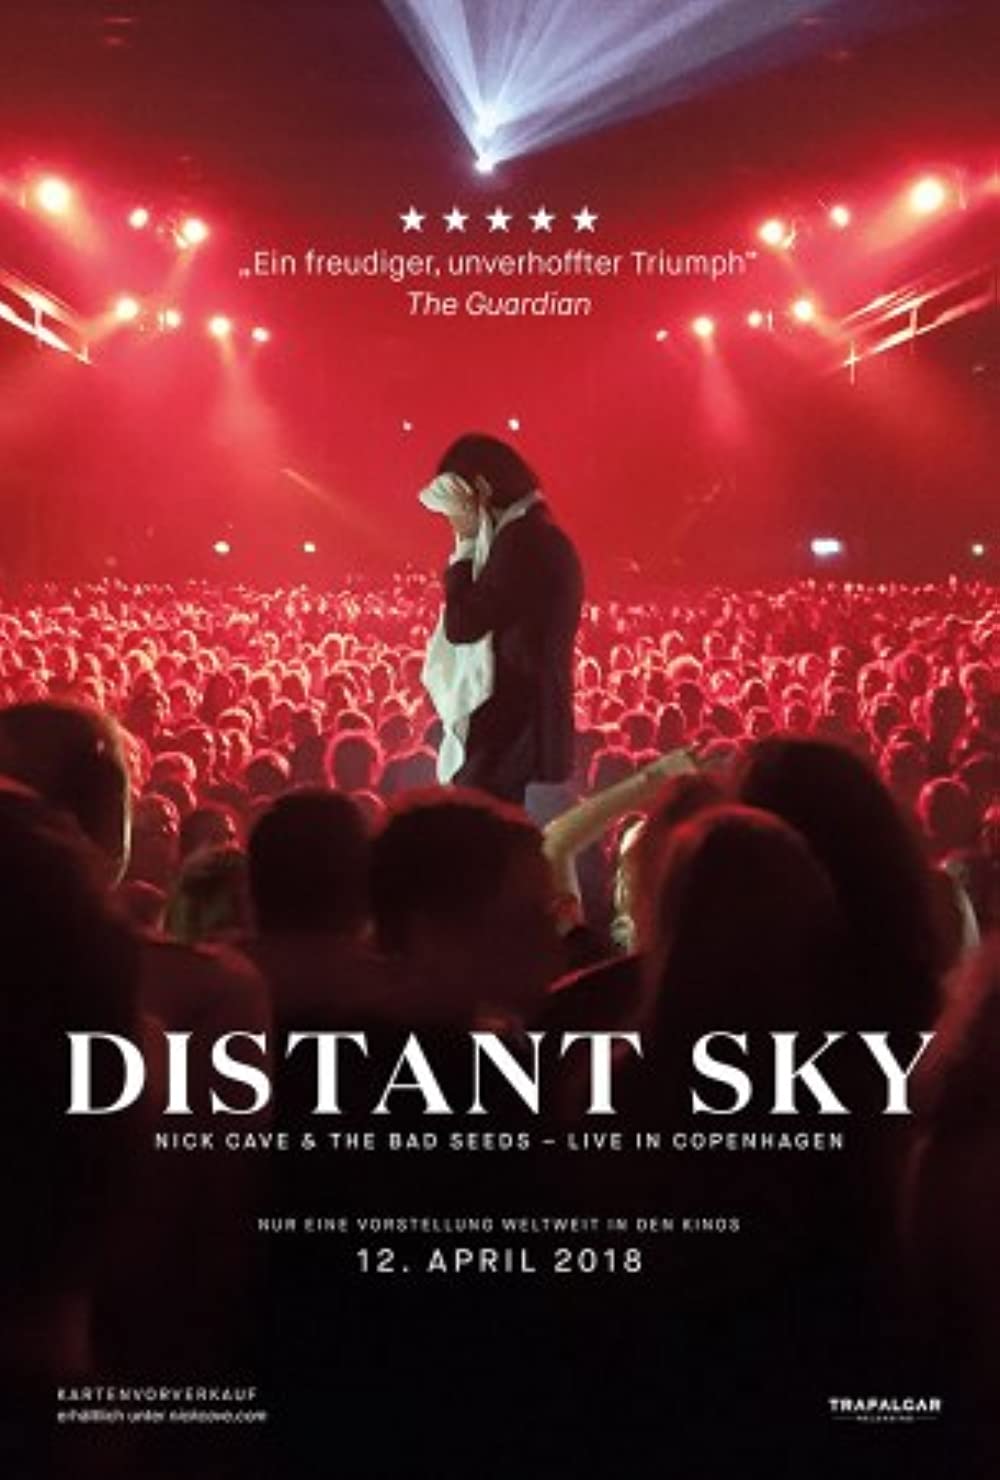 Distant Sky - Nick Cave & The Bad Seeds Live in Copenhagen